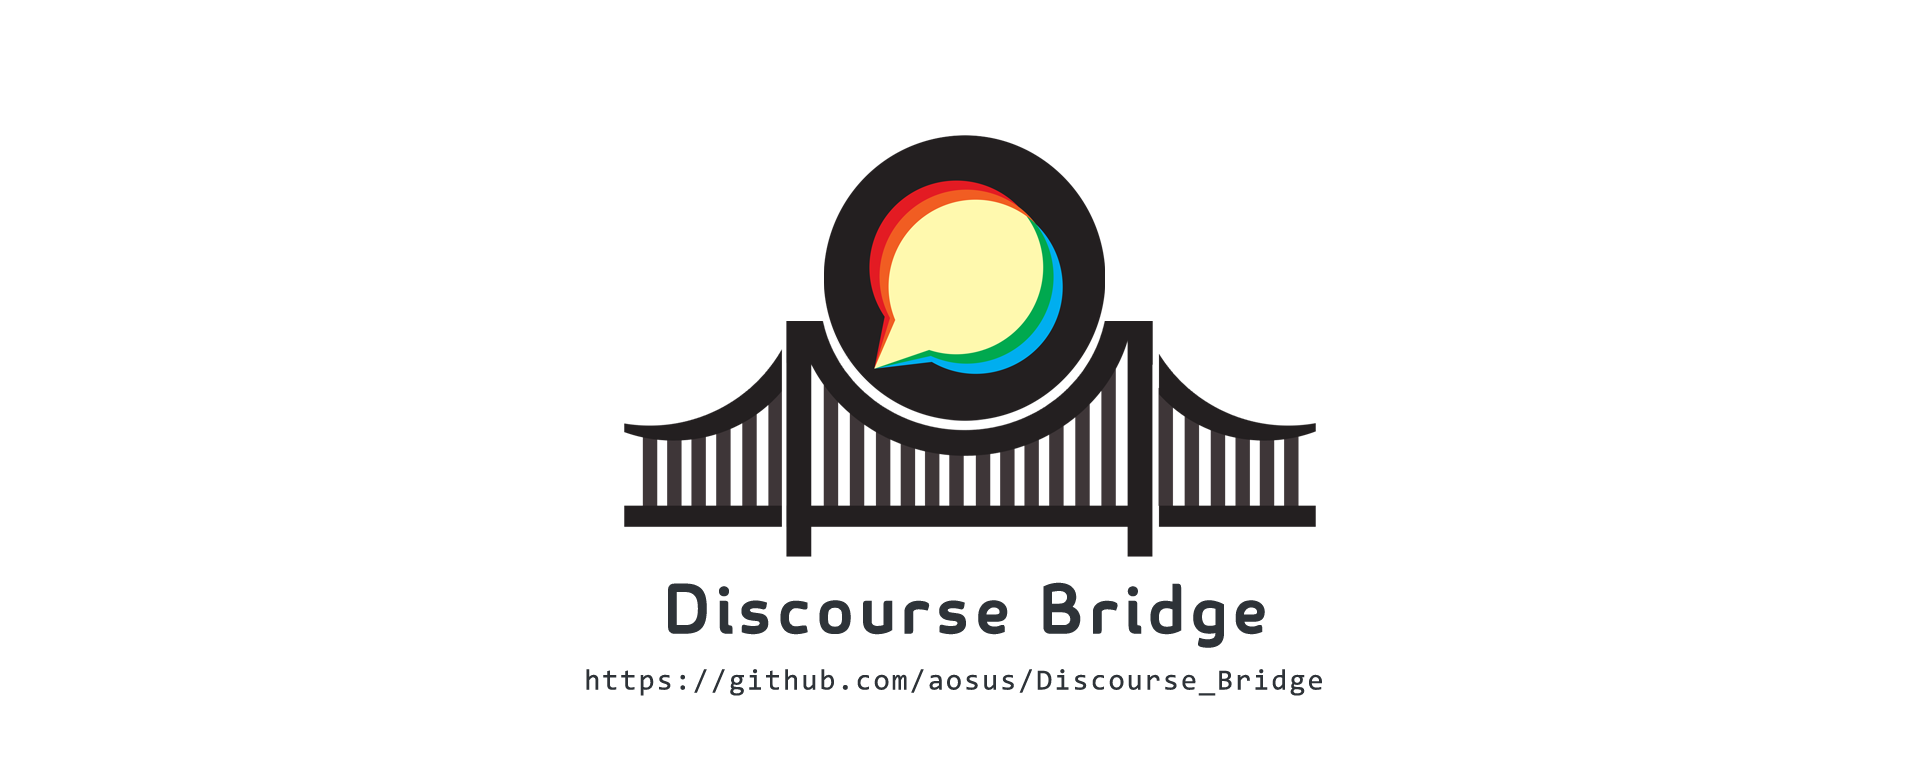 Discourse_Bridge.png